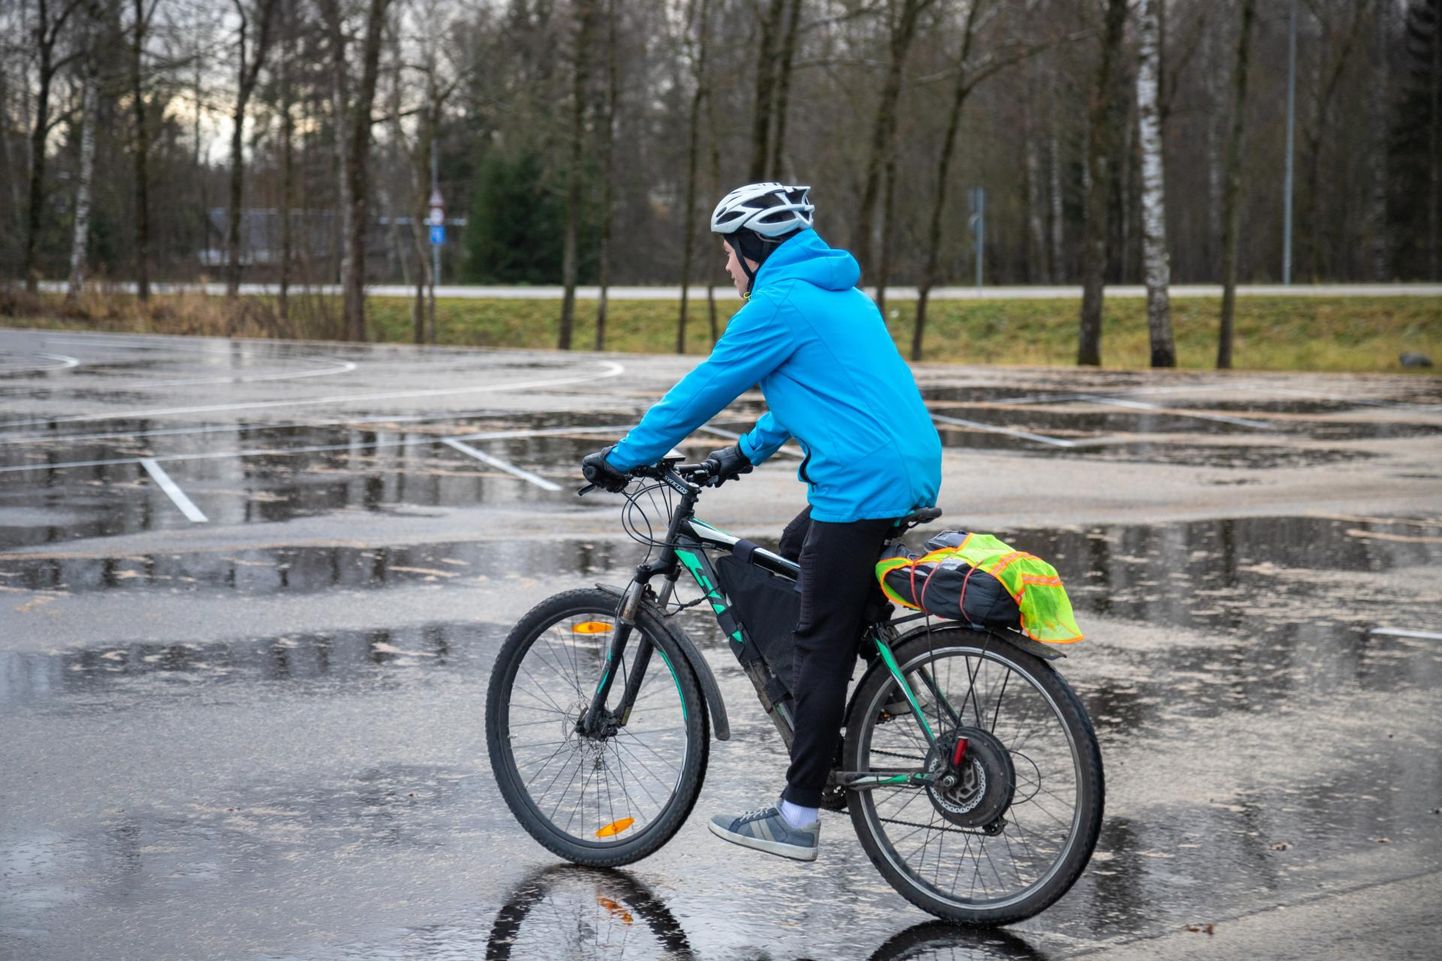 Jalgrattaga sõitma asudes tasub veenduda, et talv pole rattale liiga teinud. Pilt on illustreeriv.